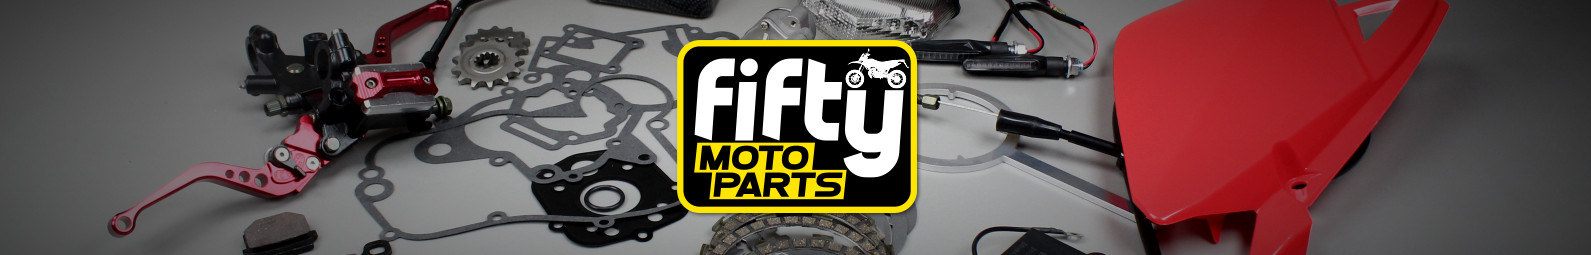 peças de scooter para motocicleta Fifty moto parts